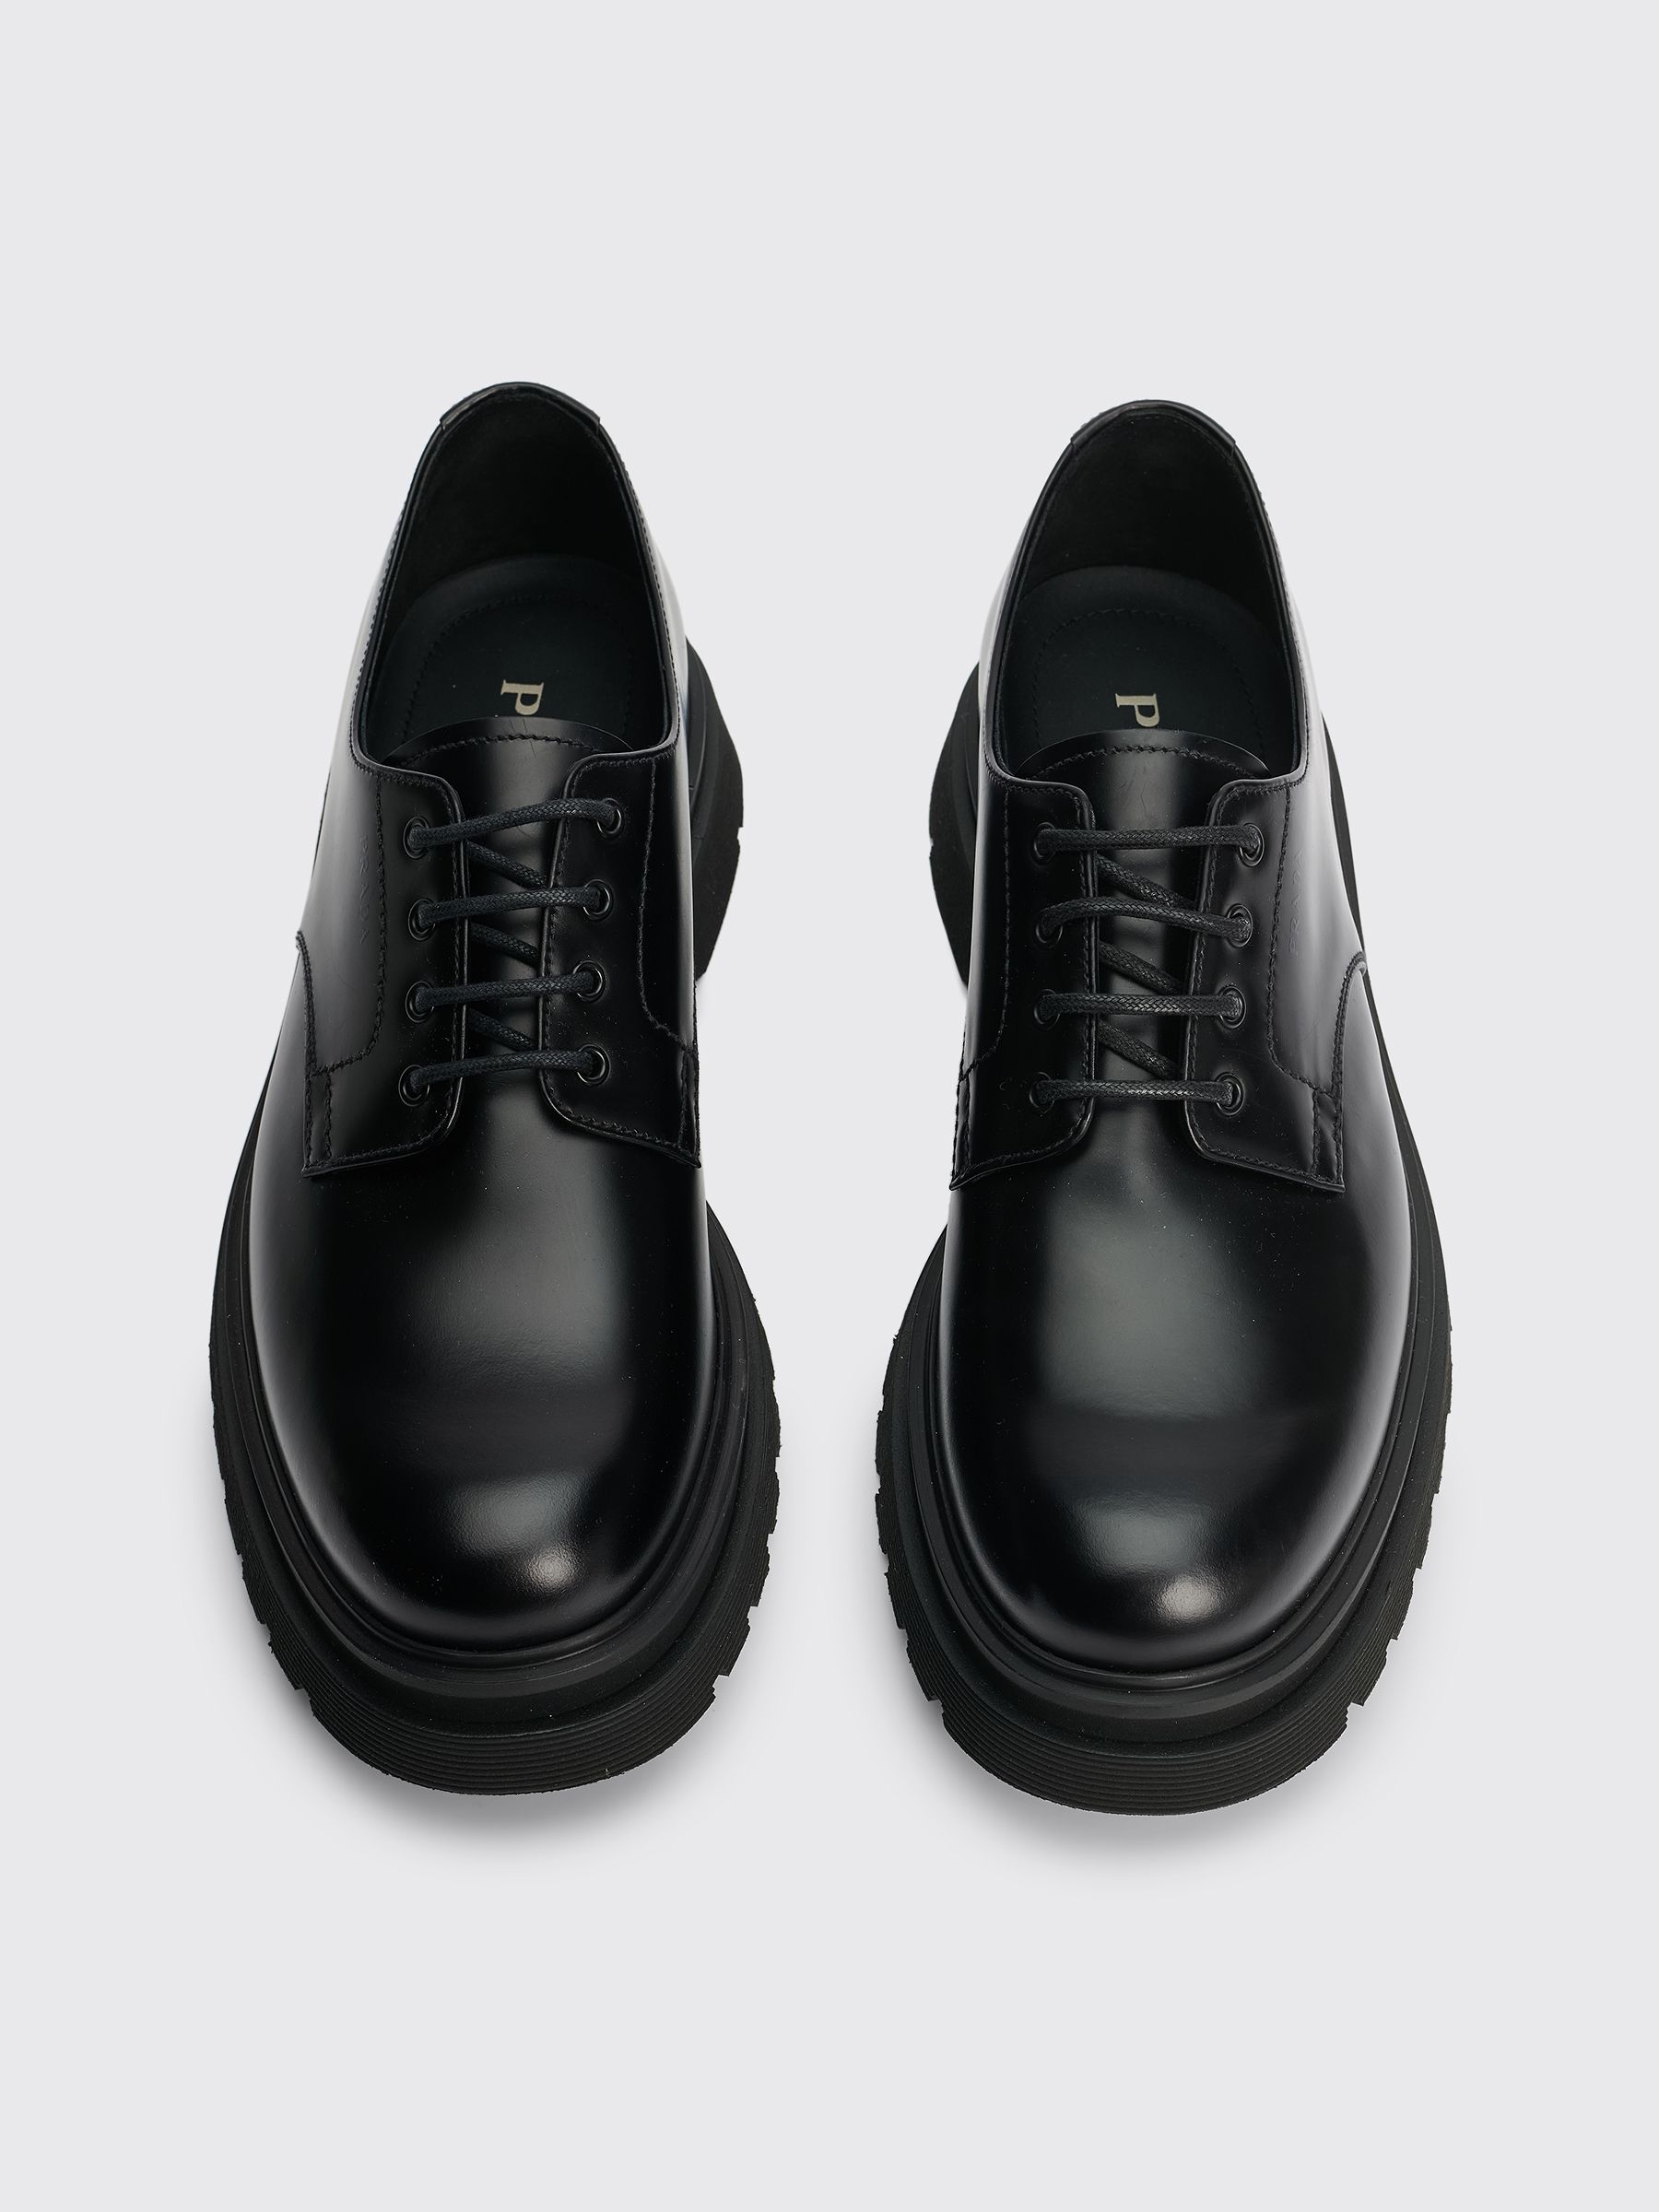 Très Bien - Prada Leather Lace Up Derby Shoes Black